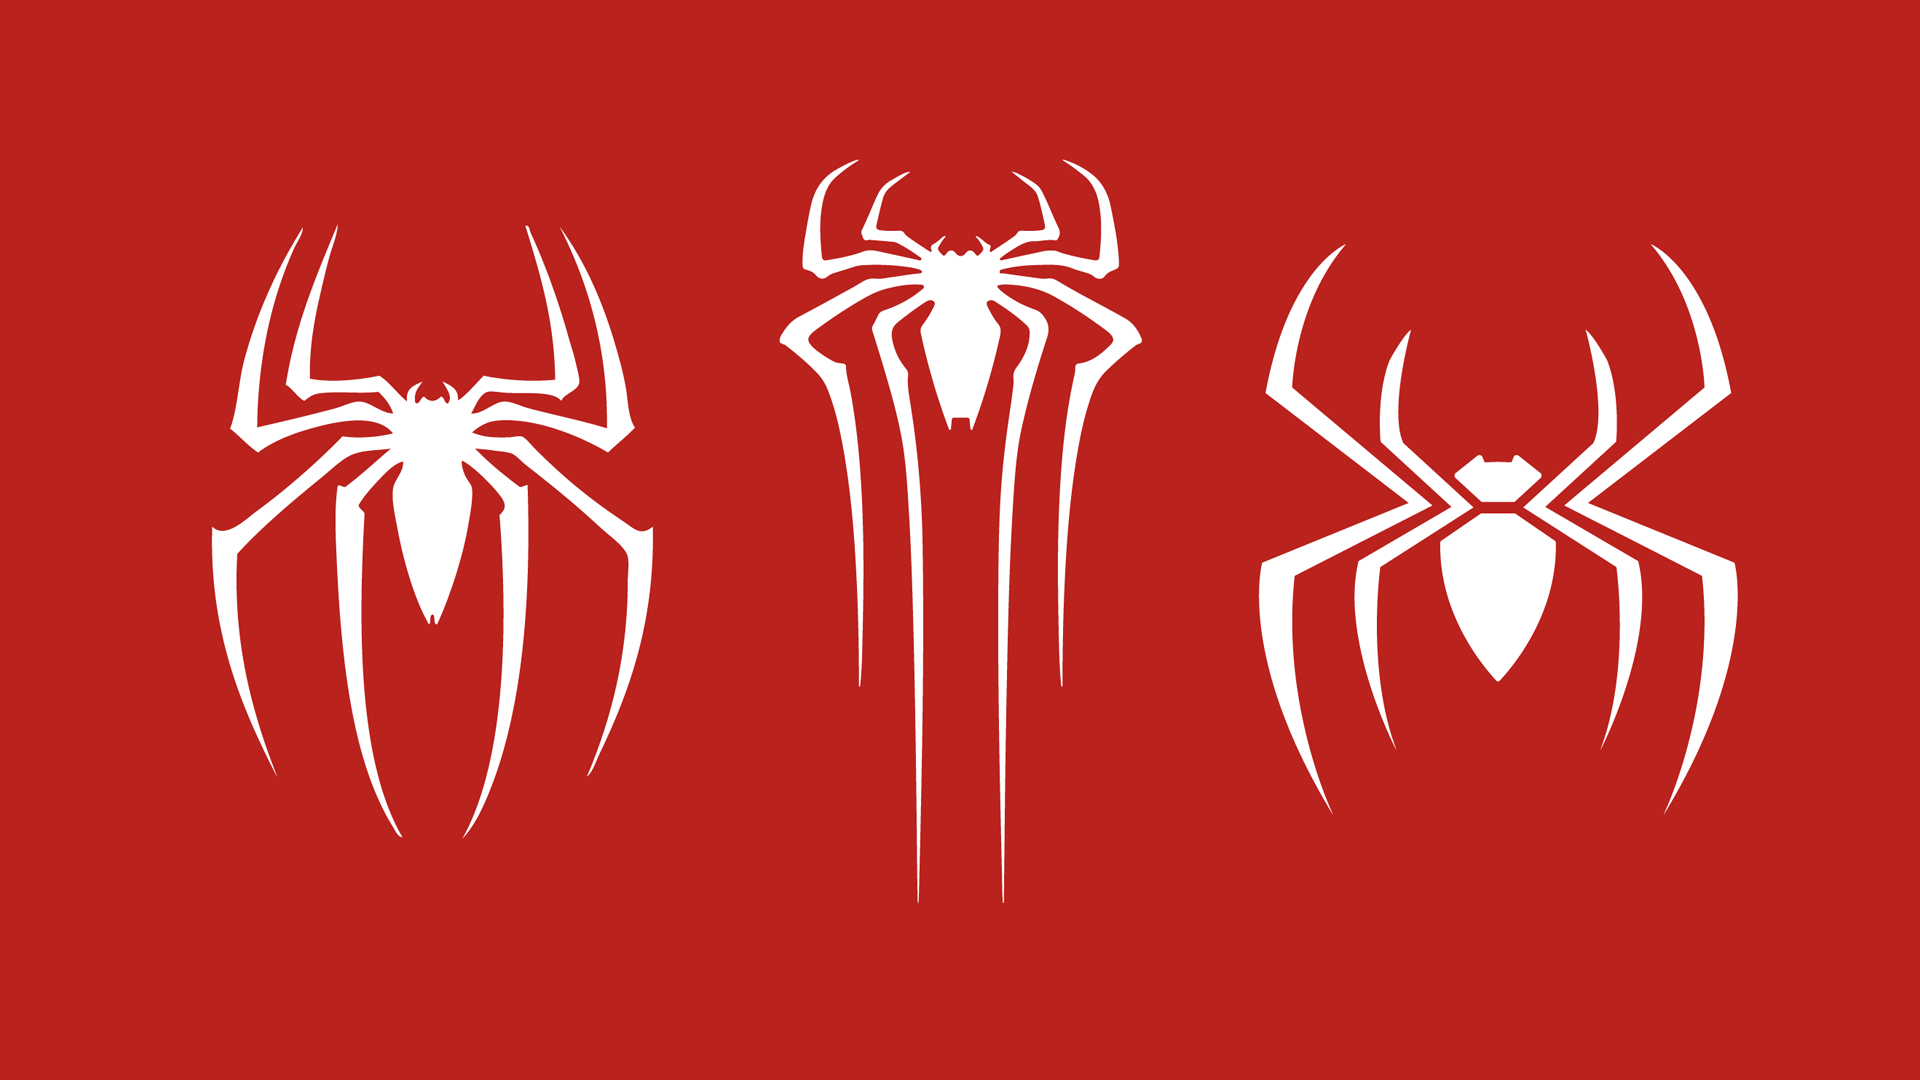 spiderman spider image